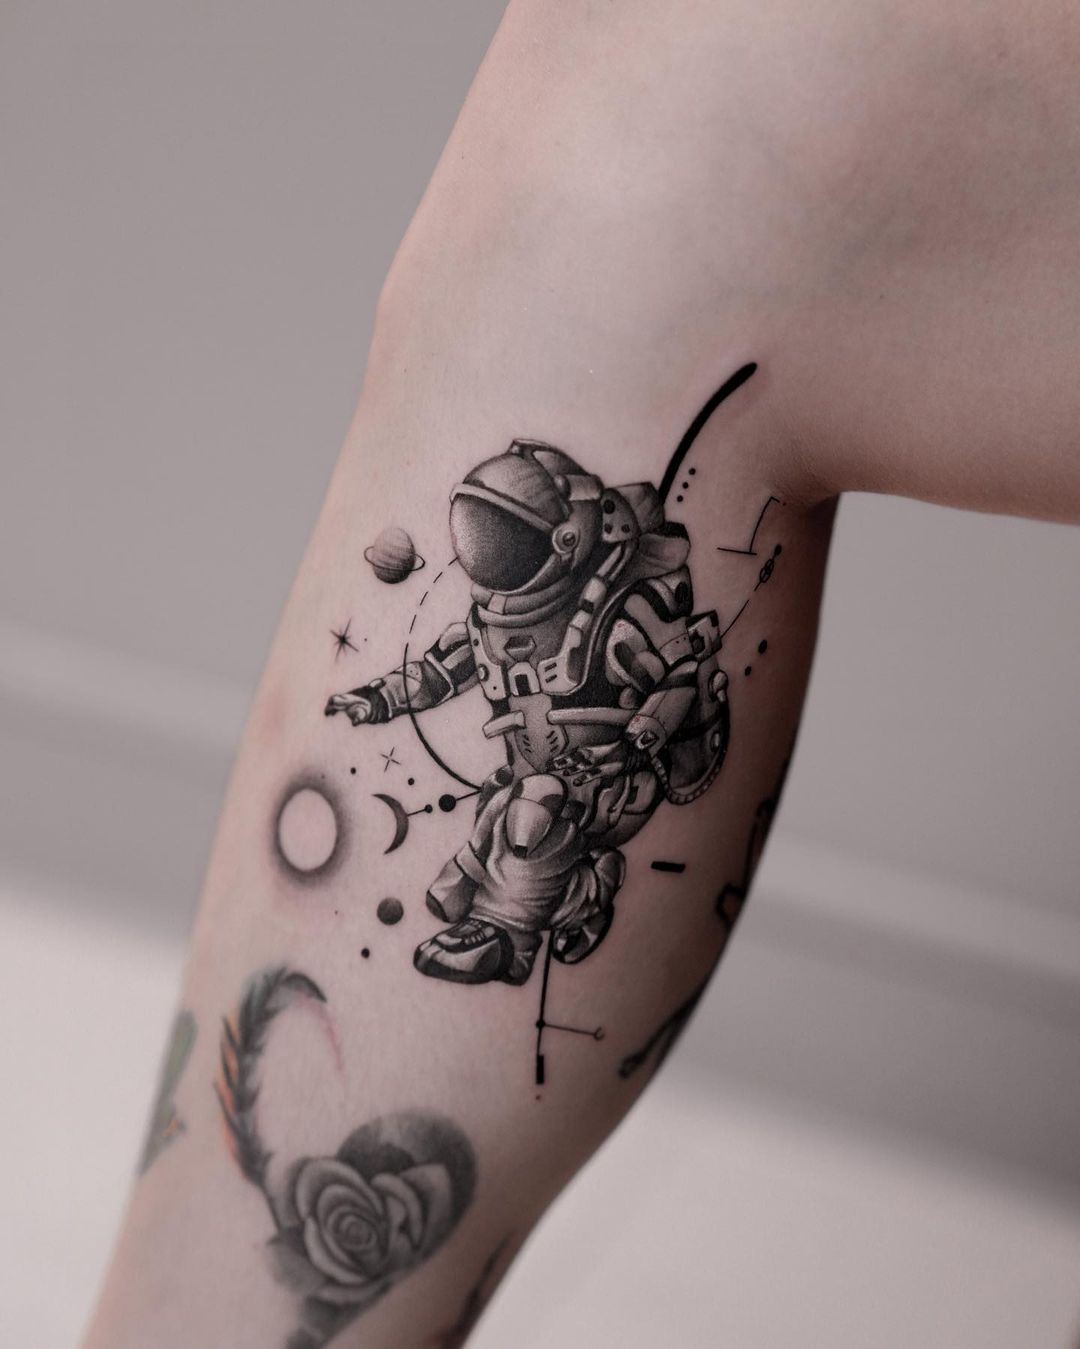 Galaxy tattoo ideas by deartattoohk